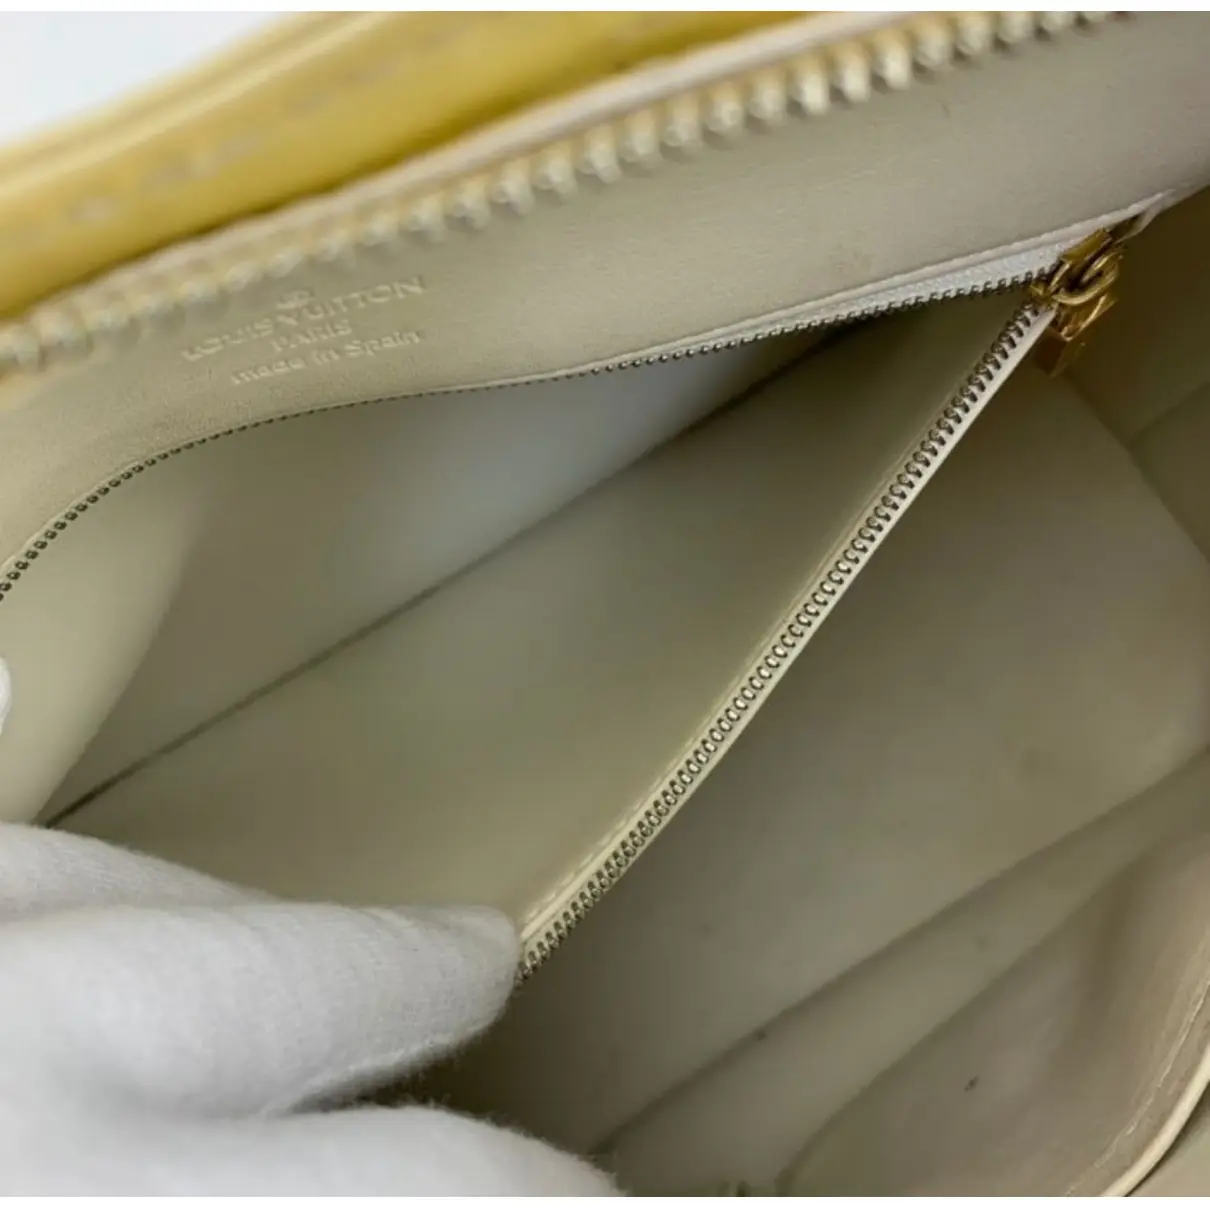 Brentwood patent leather handbag Louis Vuitton - Vintage